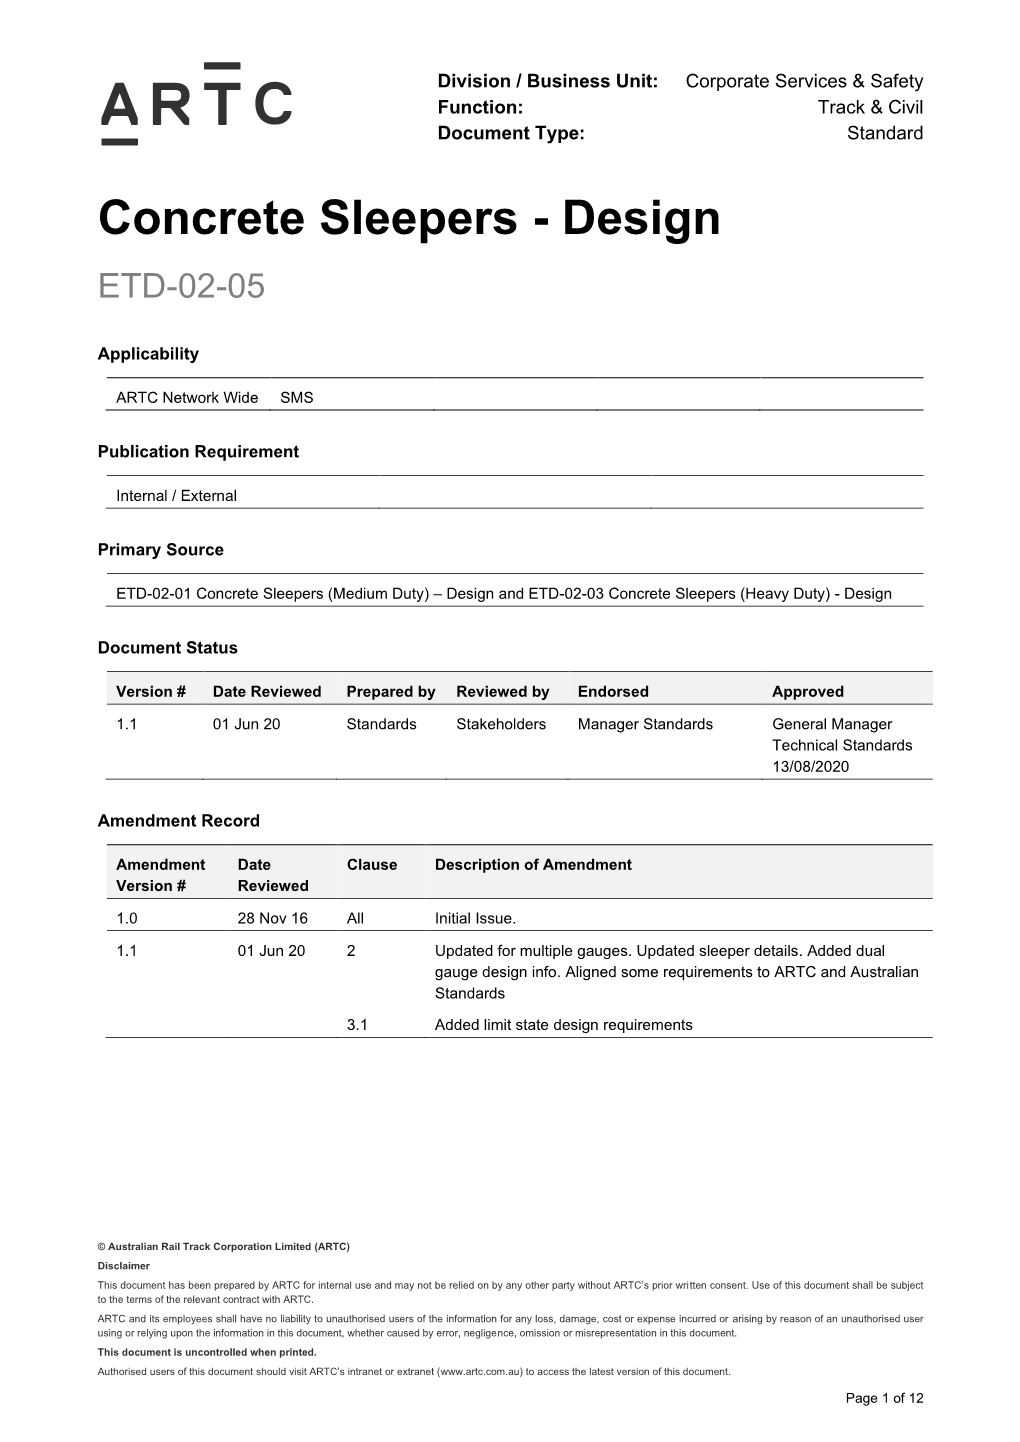 Concrete Sleepers - Design ETD-02-05